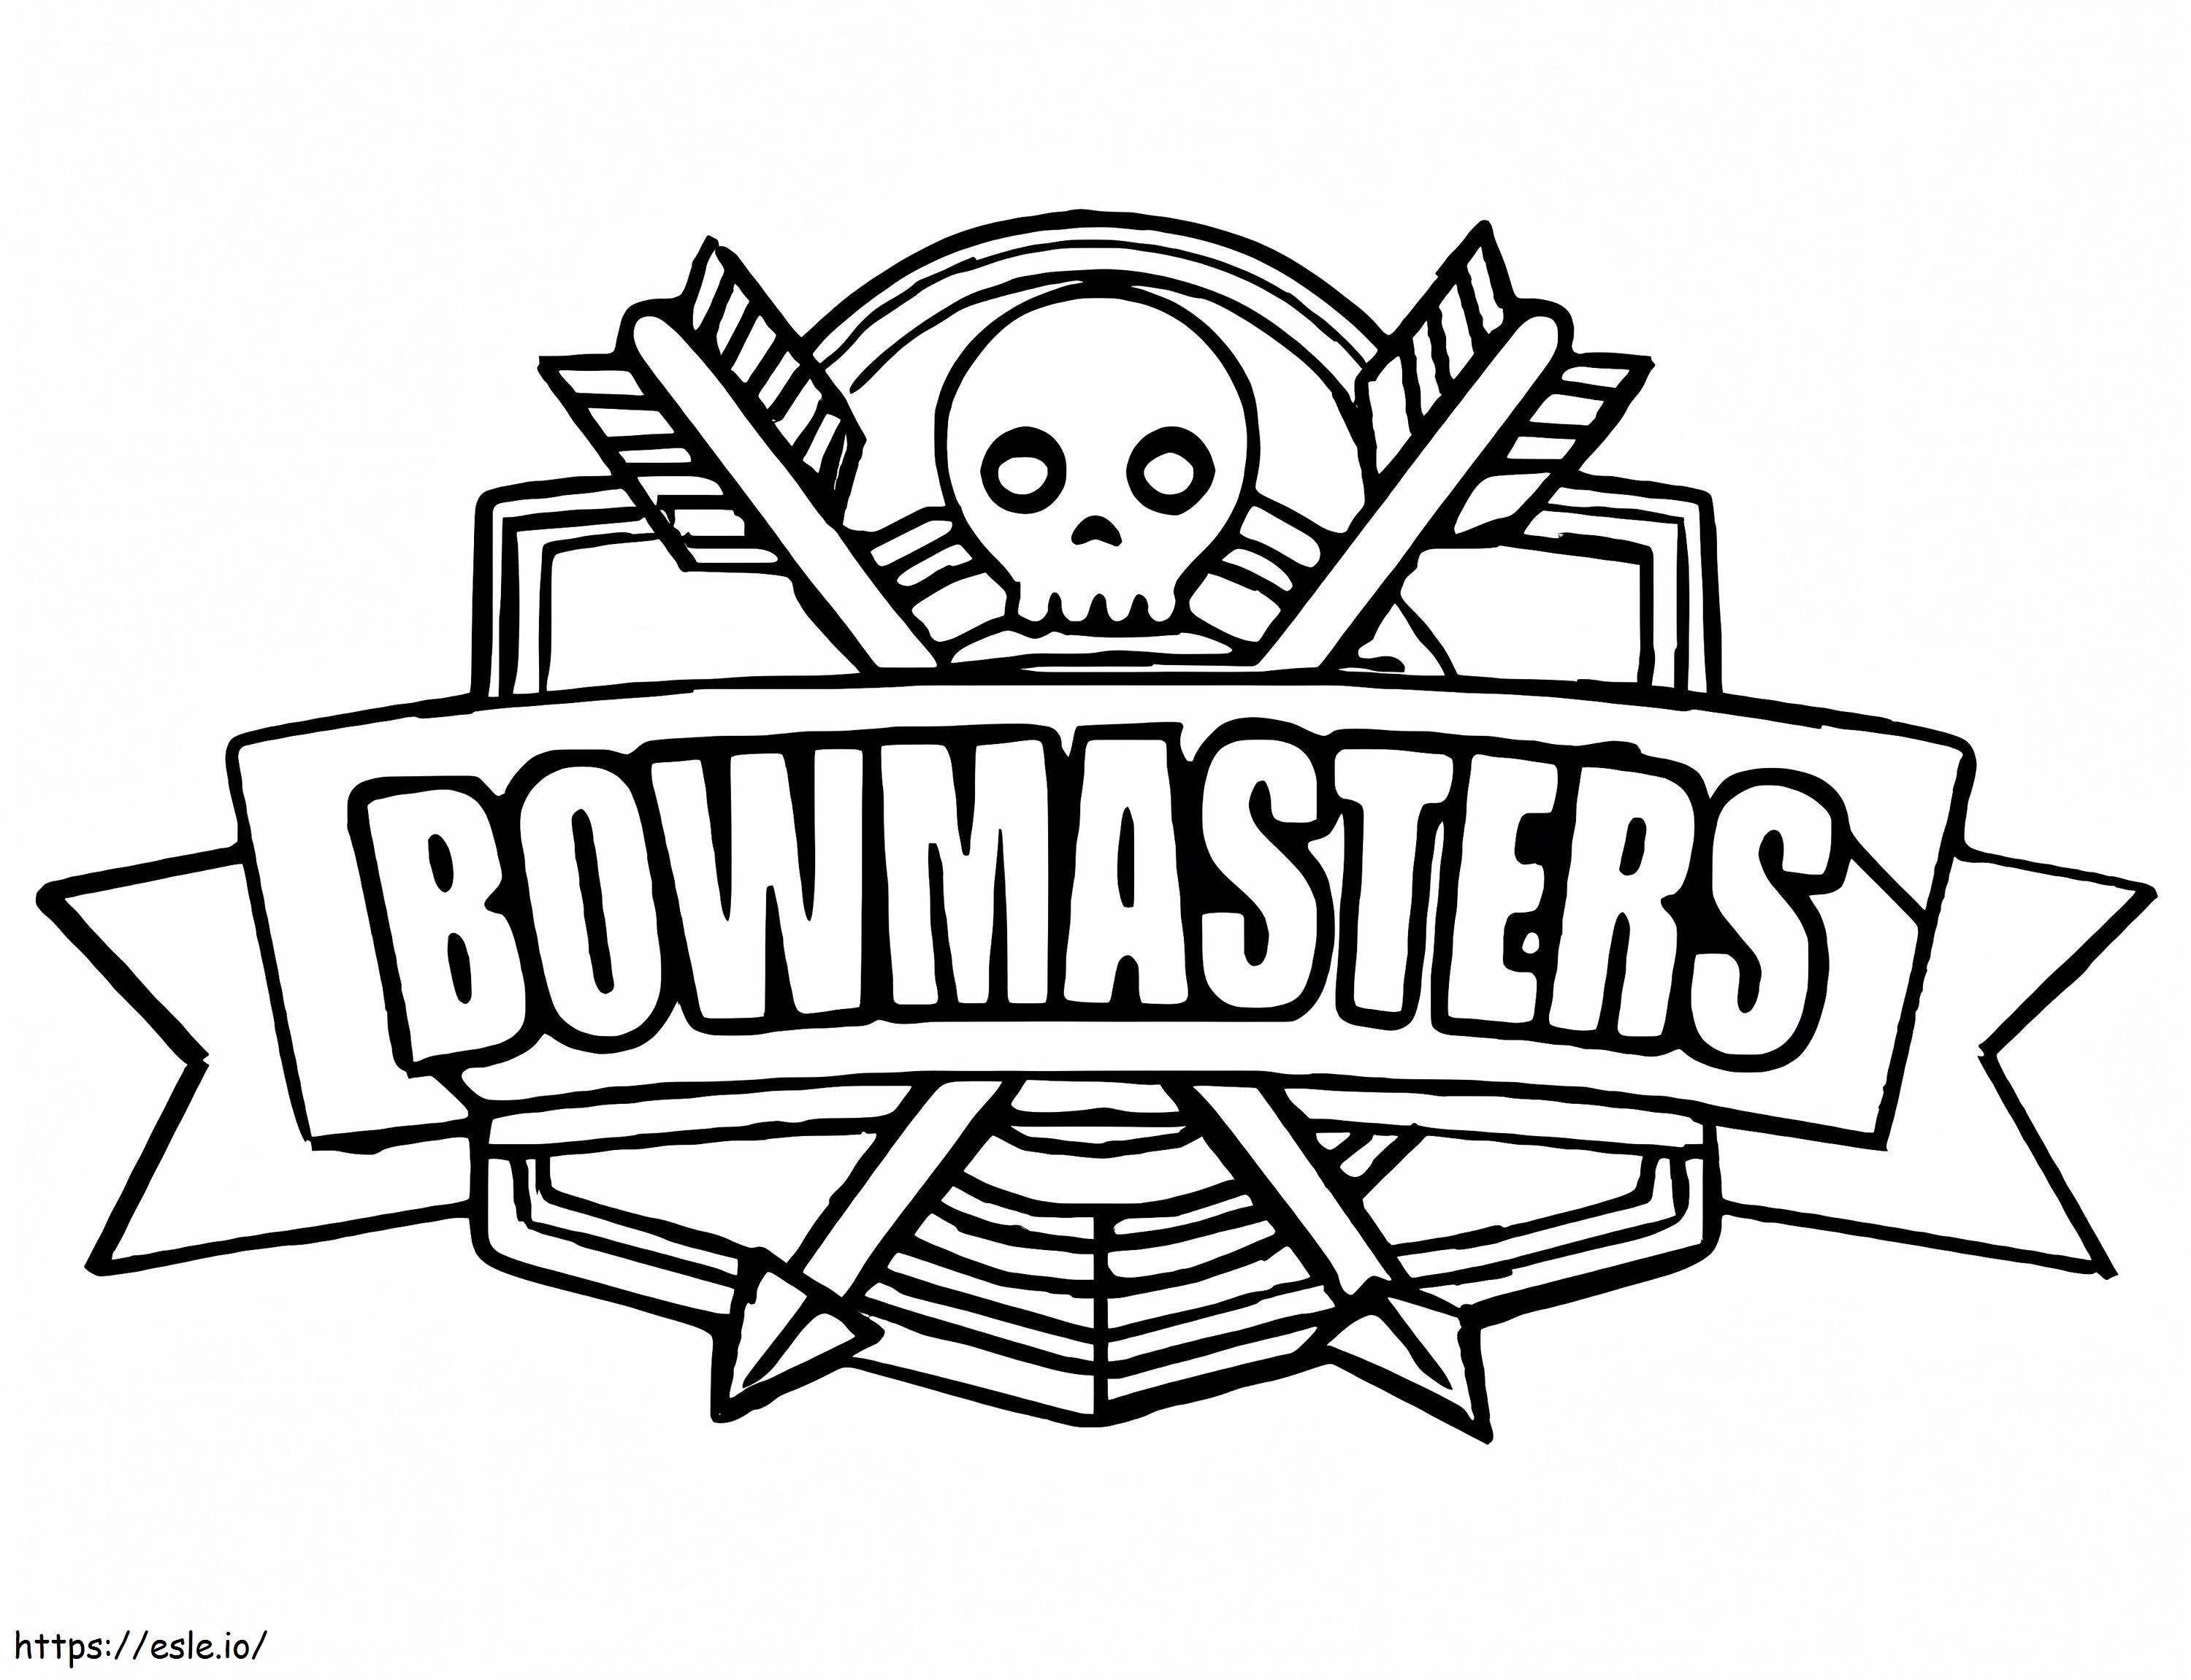 Coloriage Logo Bowmasters à imprimer dessin